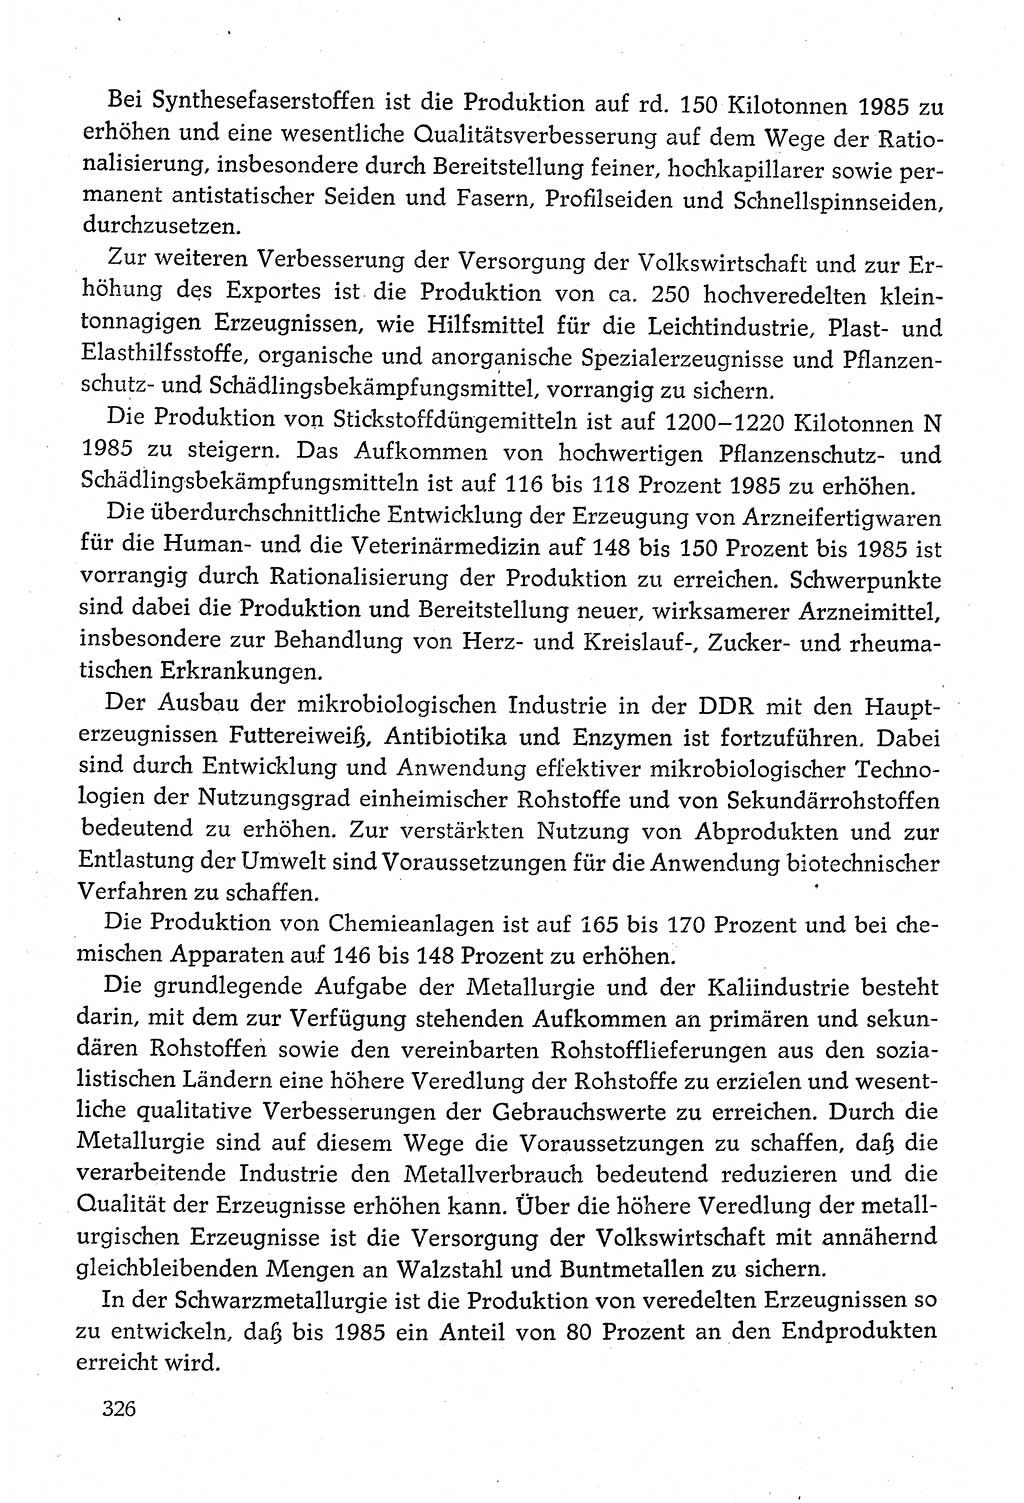 Dokumente der Sozialistischen Einheitspartei Deutschlands (SED) [Deutsche Demokratische Republik (DDR)] 1980-1981, Seite 326 (Dok. SED DDR 1980-1981, S. 326)